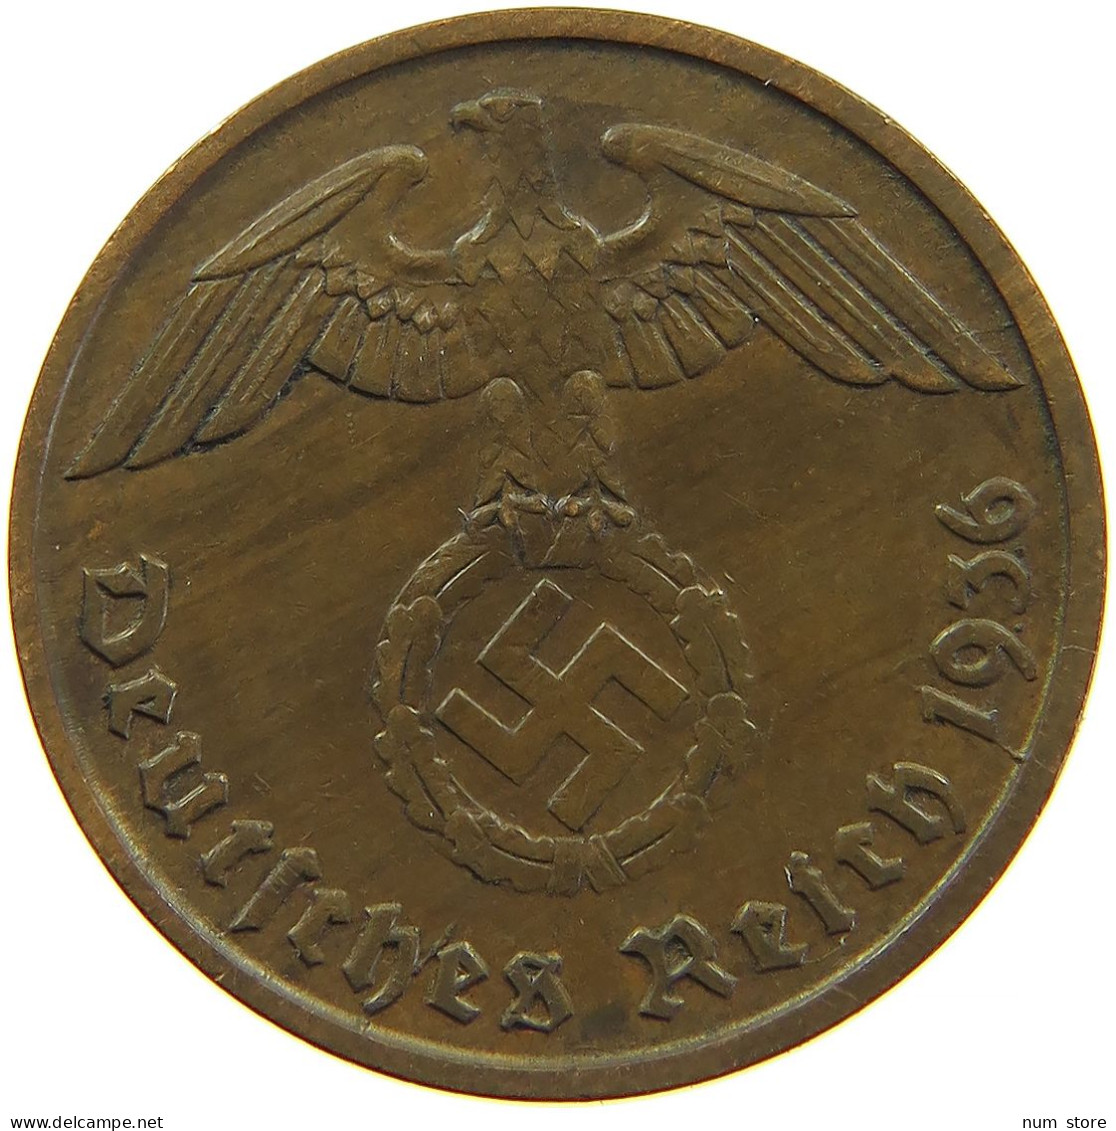 GERMANY 2 REICHSPFENNIG 1936 D #s083 0279 - 2 Reichspfennig